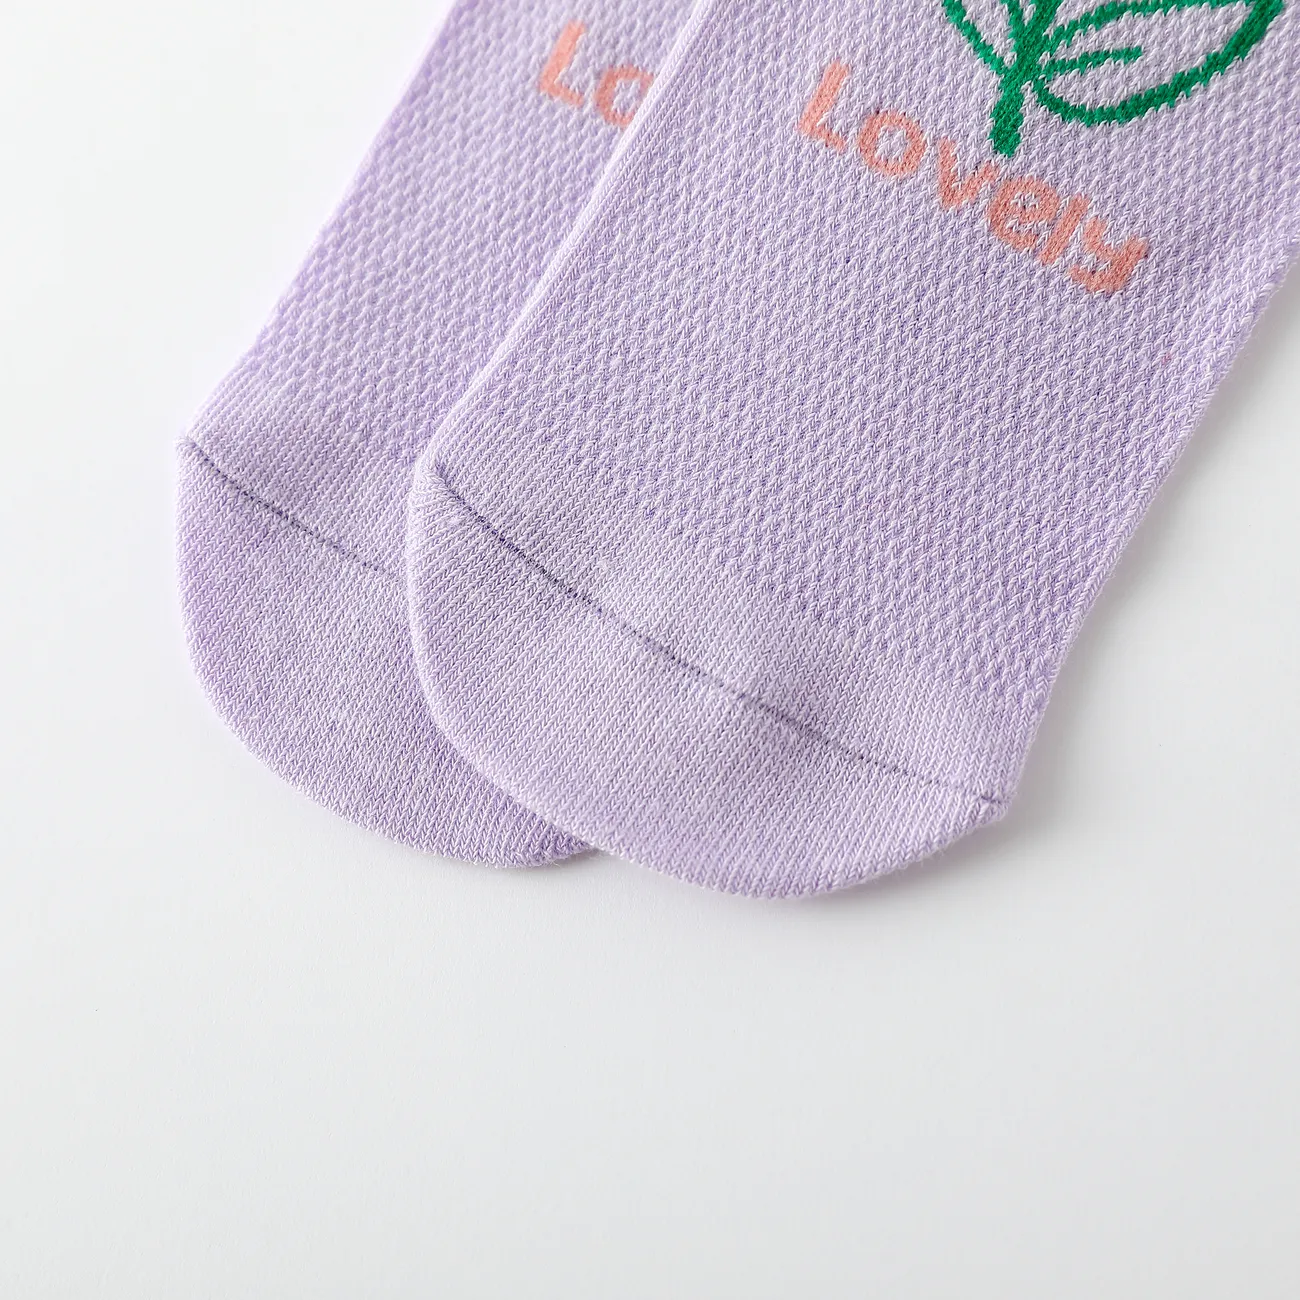 5er-Pack Kleinkind/Kinder Niedliche atmungsaktive Mesh-Socken mit Blumenmuster Mehrfarben big image 1